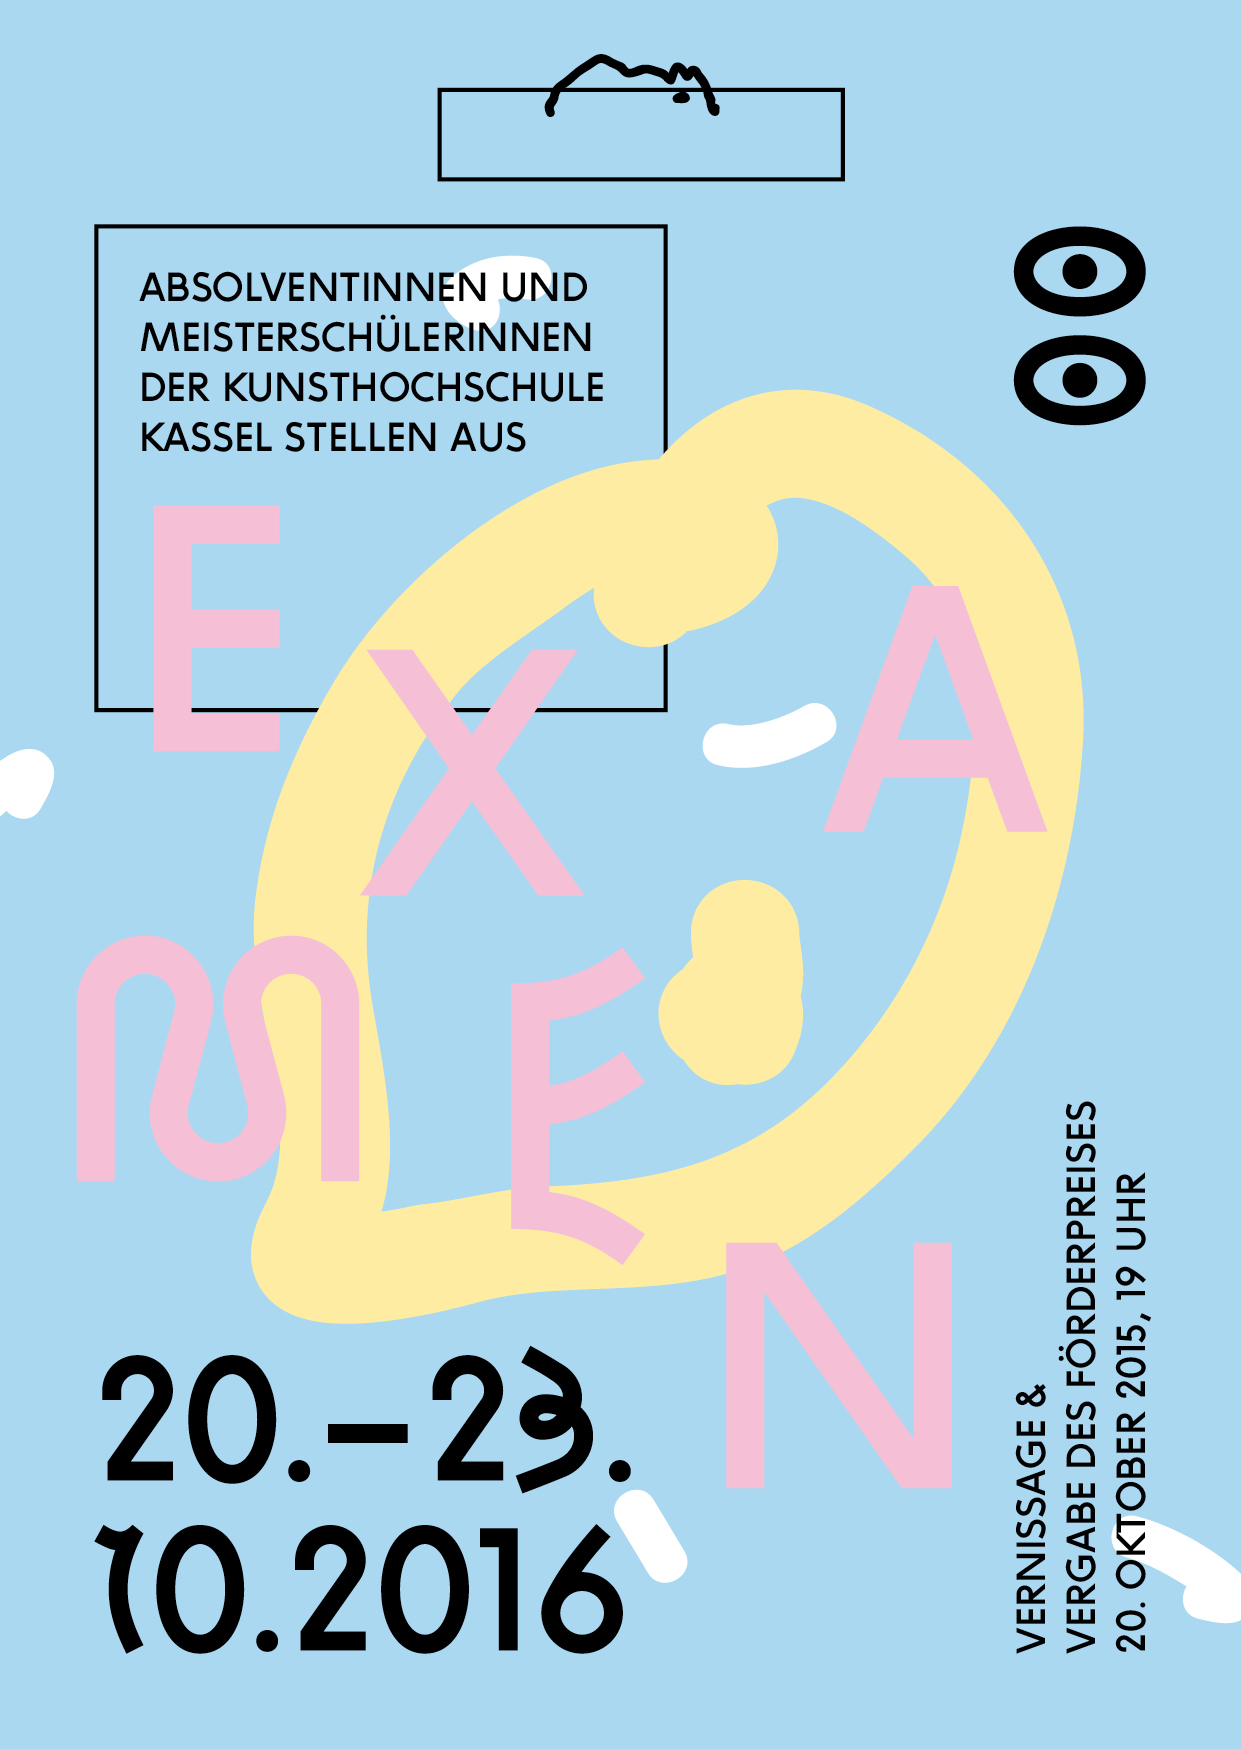 EXAMEN 2016 - Absolvent*innen und Meisterschüler*innen der Kunsthochschule Kassel stellen aus